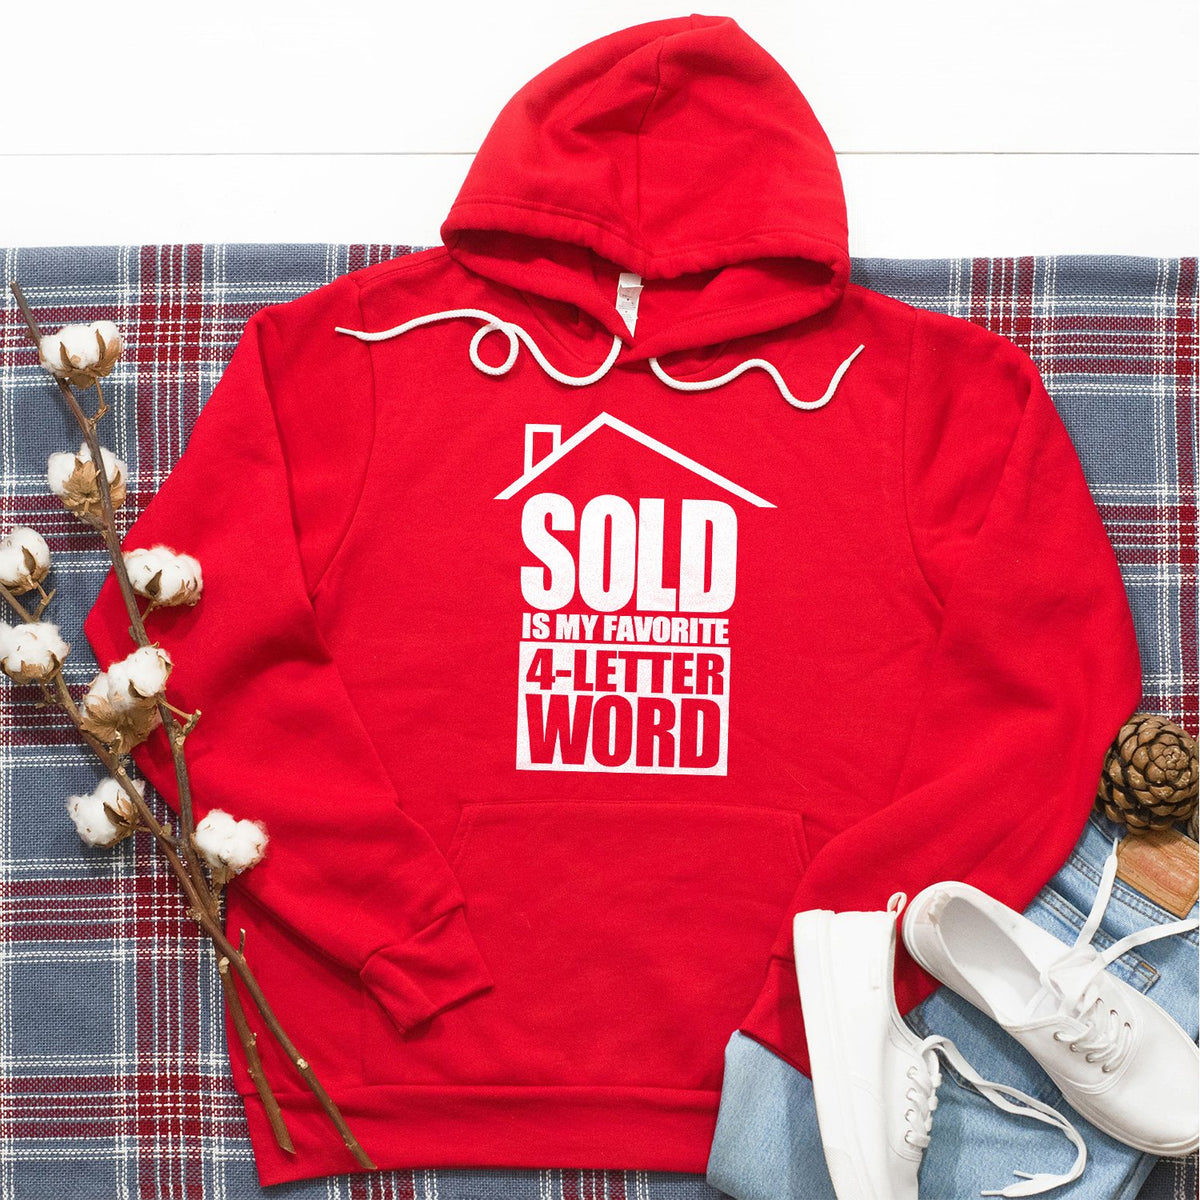 SOLD is My Favorite 4-Letter Word - Hoodie Sweatshirt